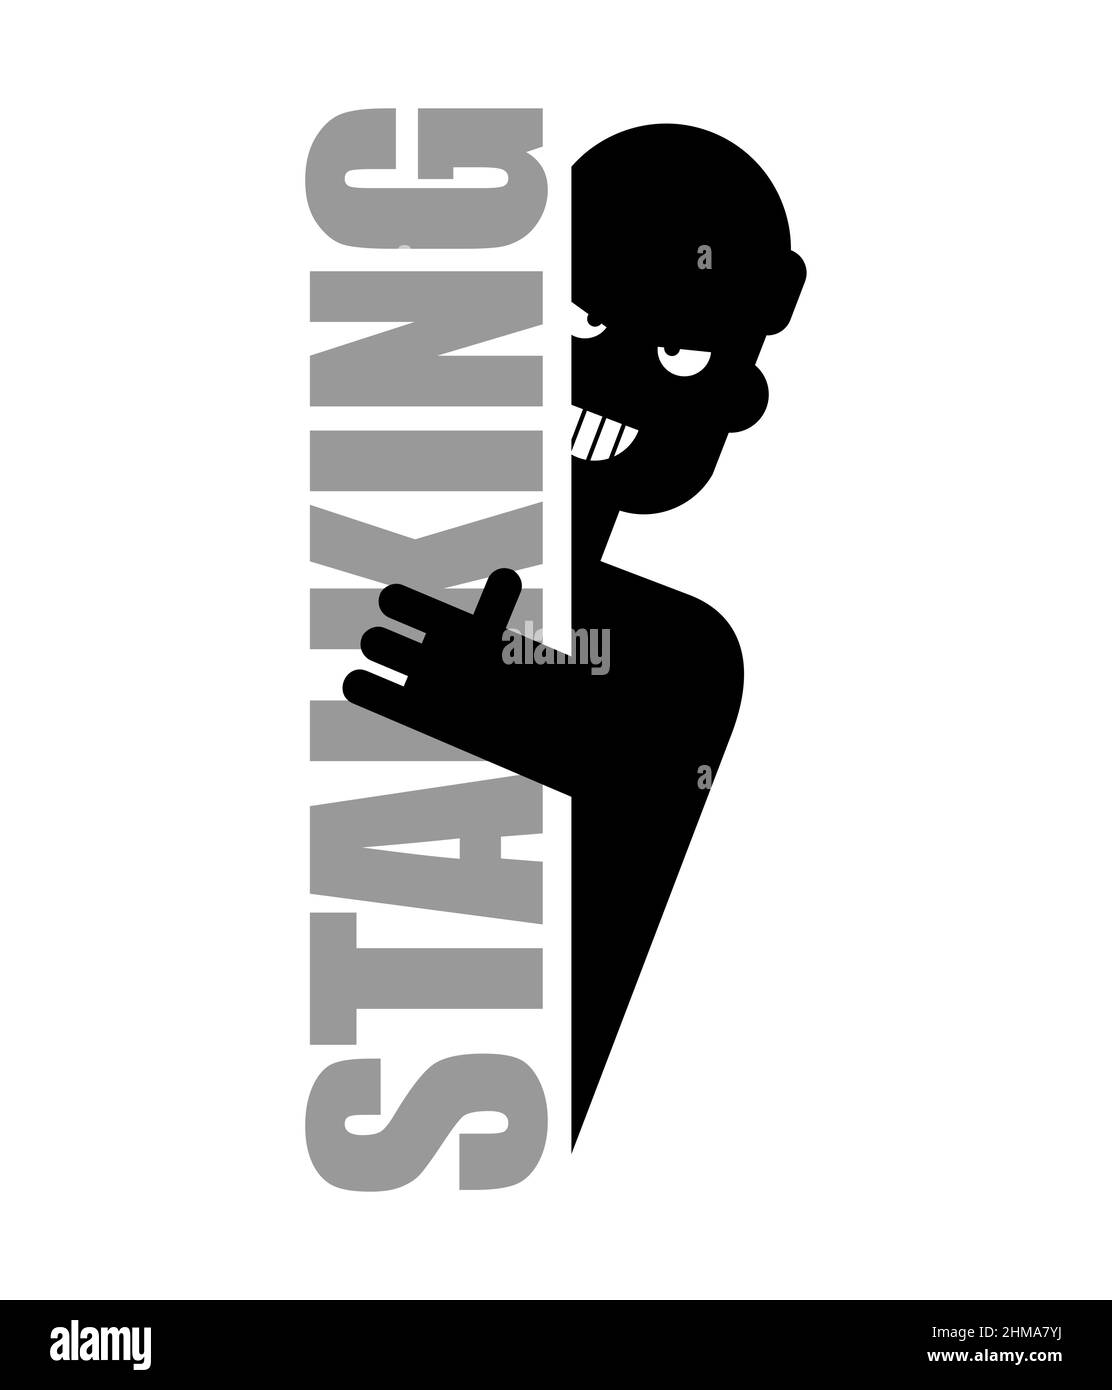 Stalking-Symbol. Der Mensch beobachtet und piepst Zeichen. Unerwünschte, obsessive Aufmerksamkeit für eine Person und seine Verfolgung Stock Vektor